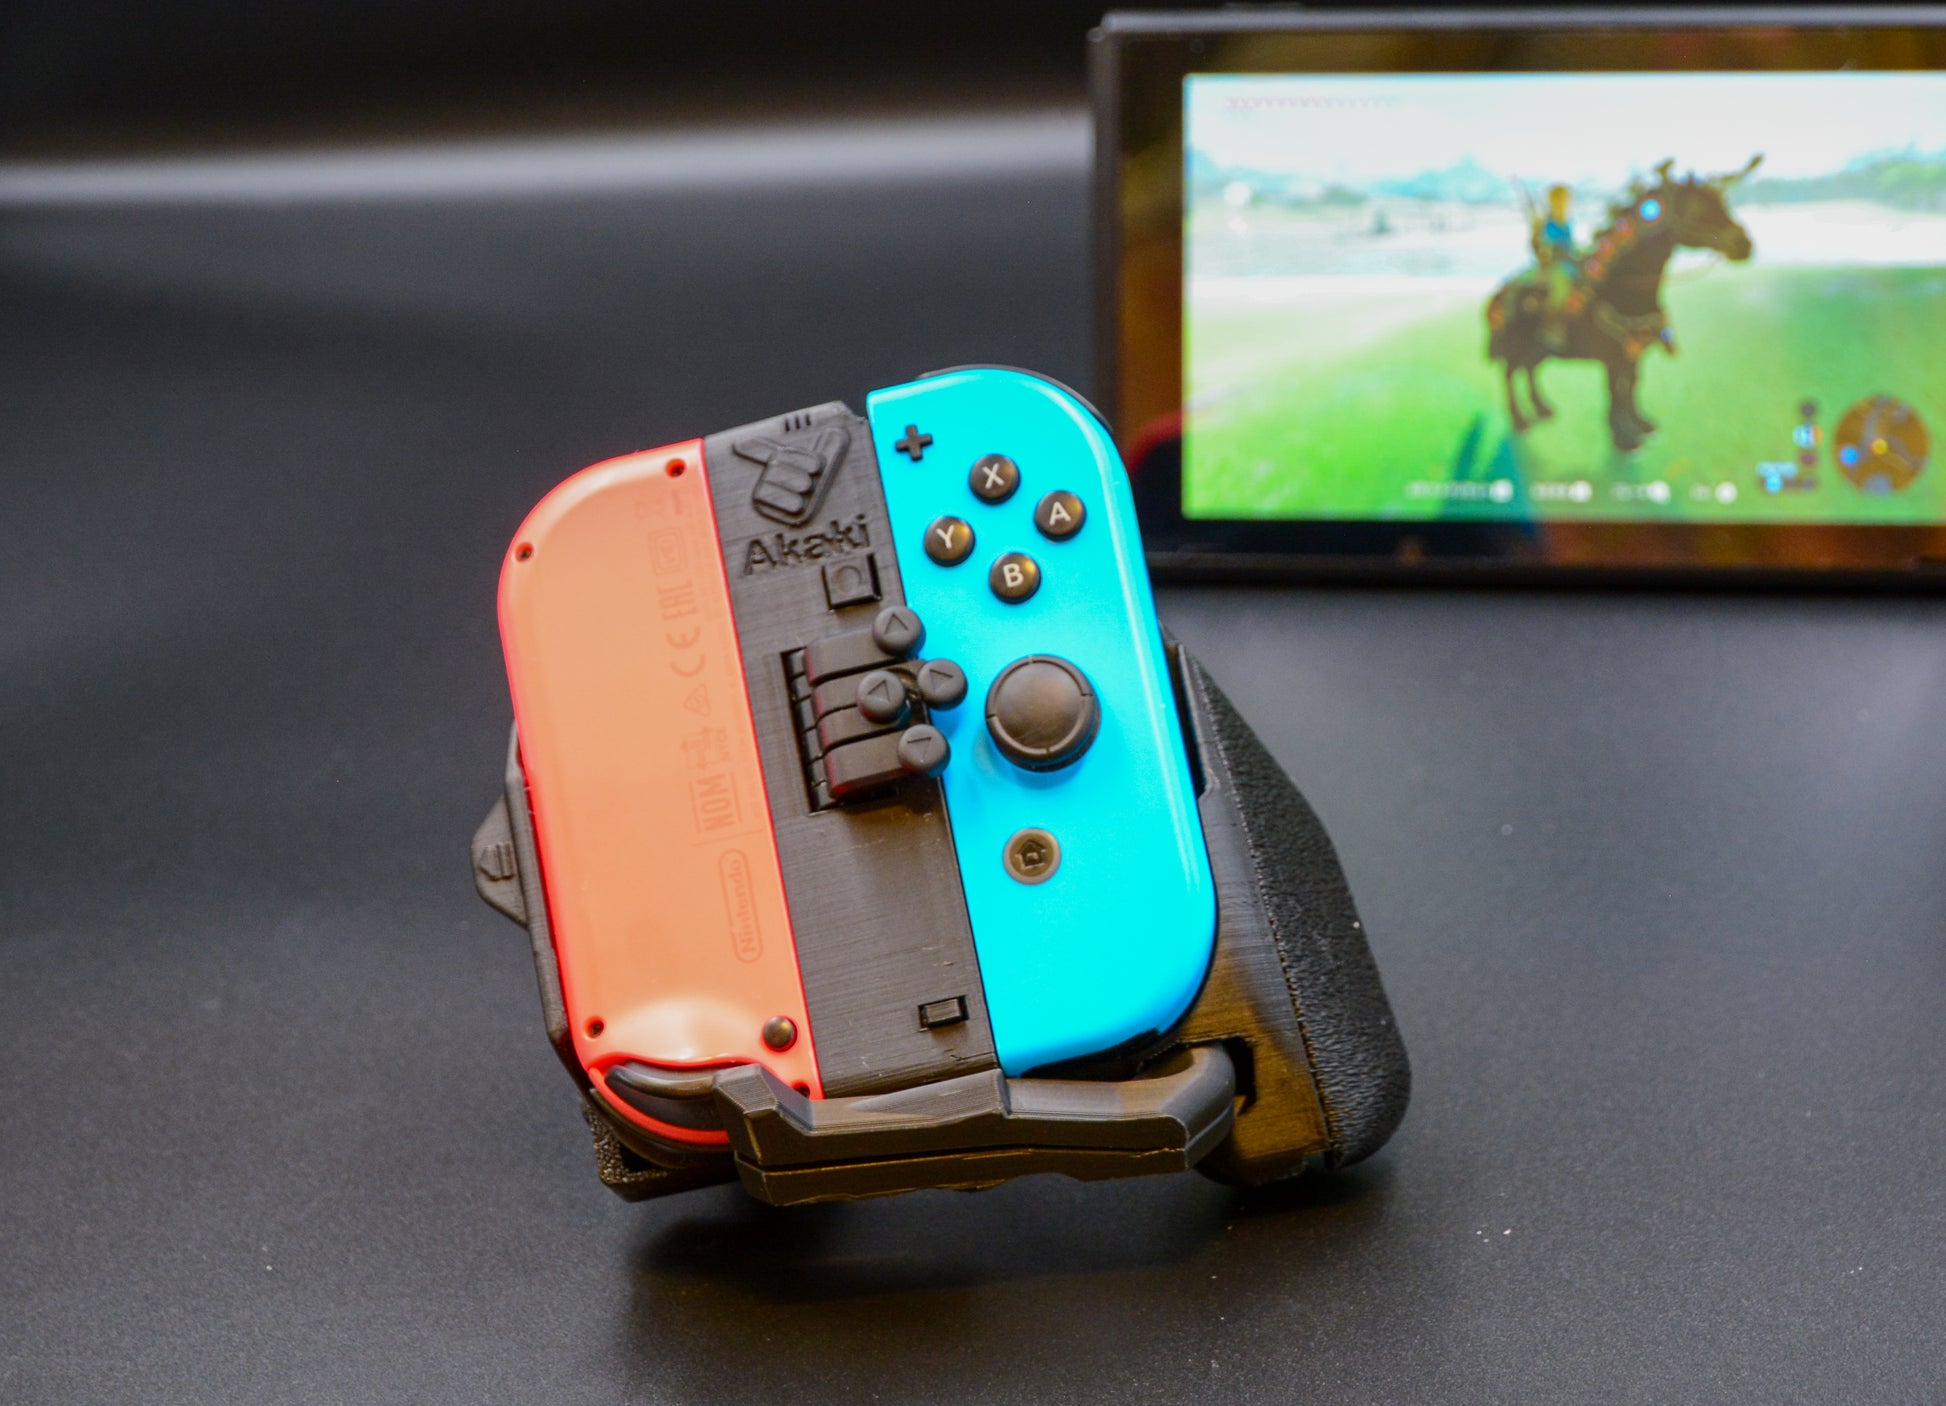 Lenkrad-kompatibler Nintendo Switch-Joy-Con-Controller, Family